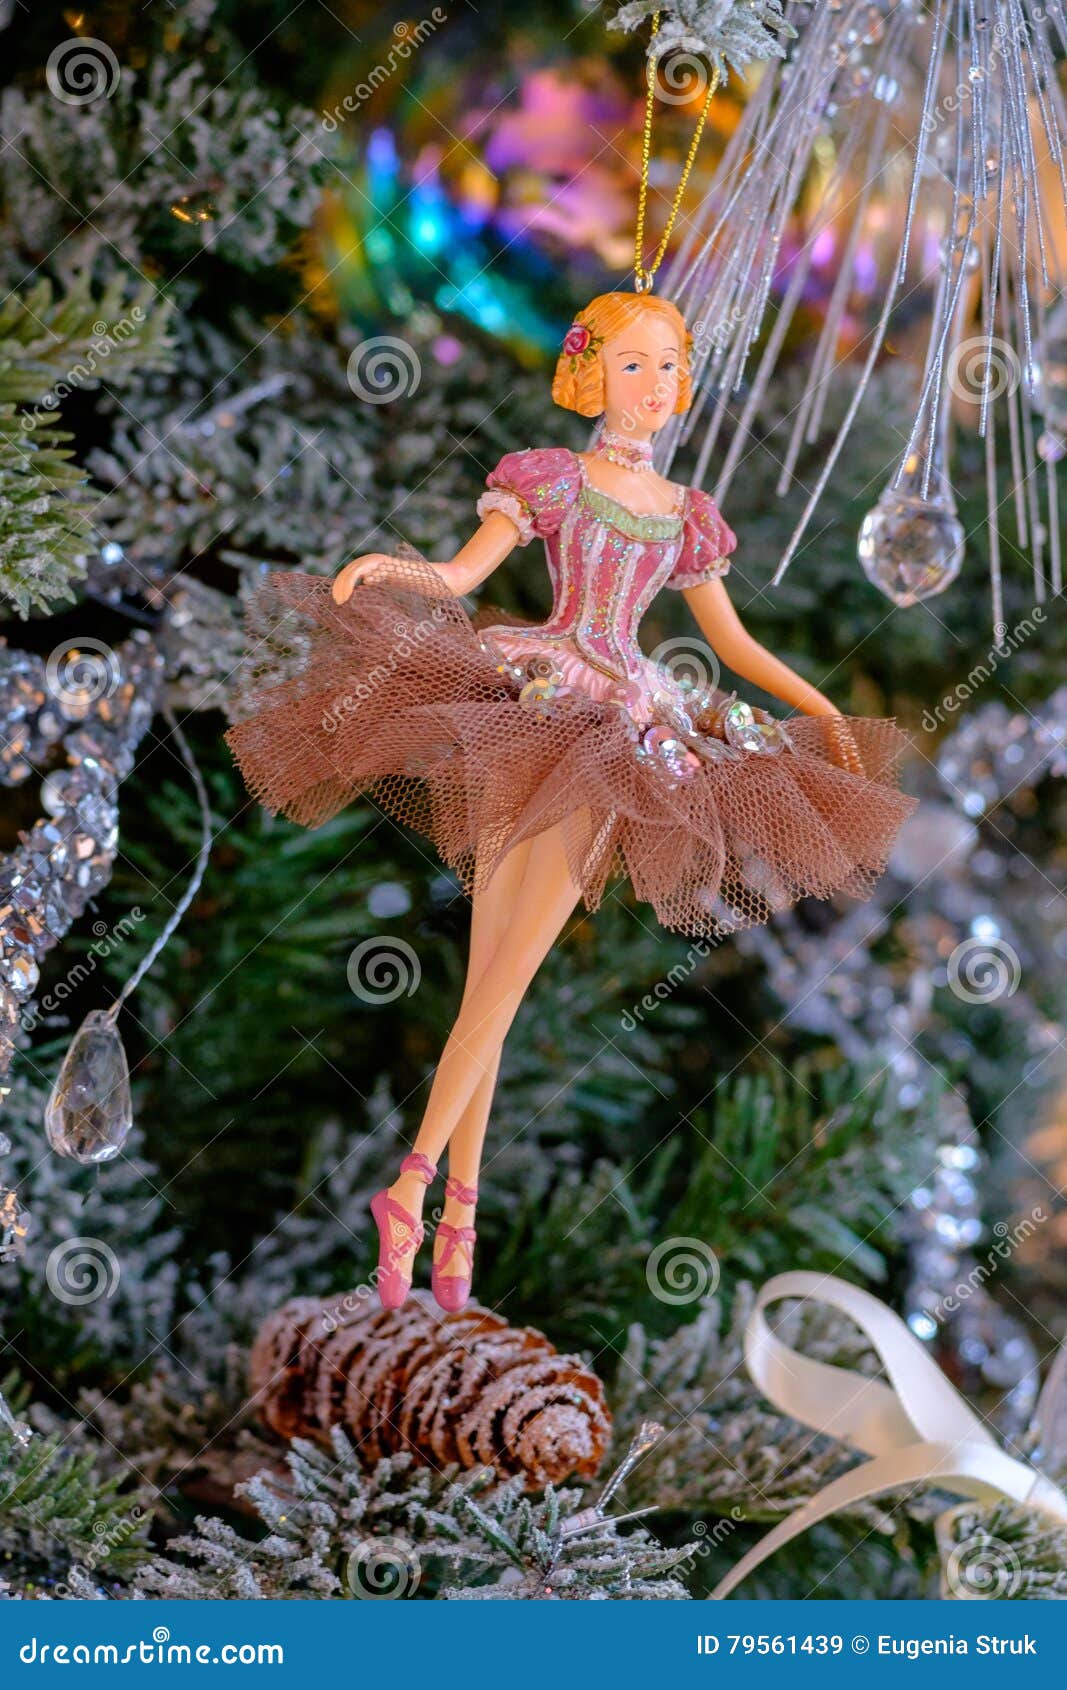 Decorazioni Natalizie Ballerine.Decorazione Di Natale Del Giocattolo Della Ballerina Immagine Stock Immagine Di Backgrounds Sfera 79561439